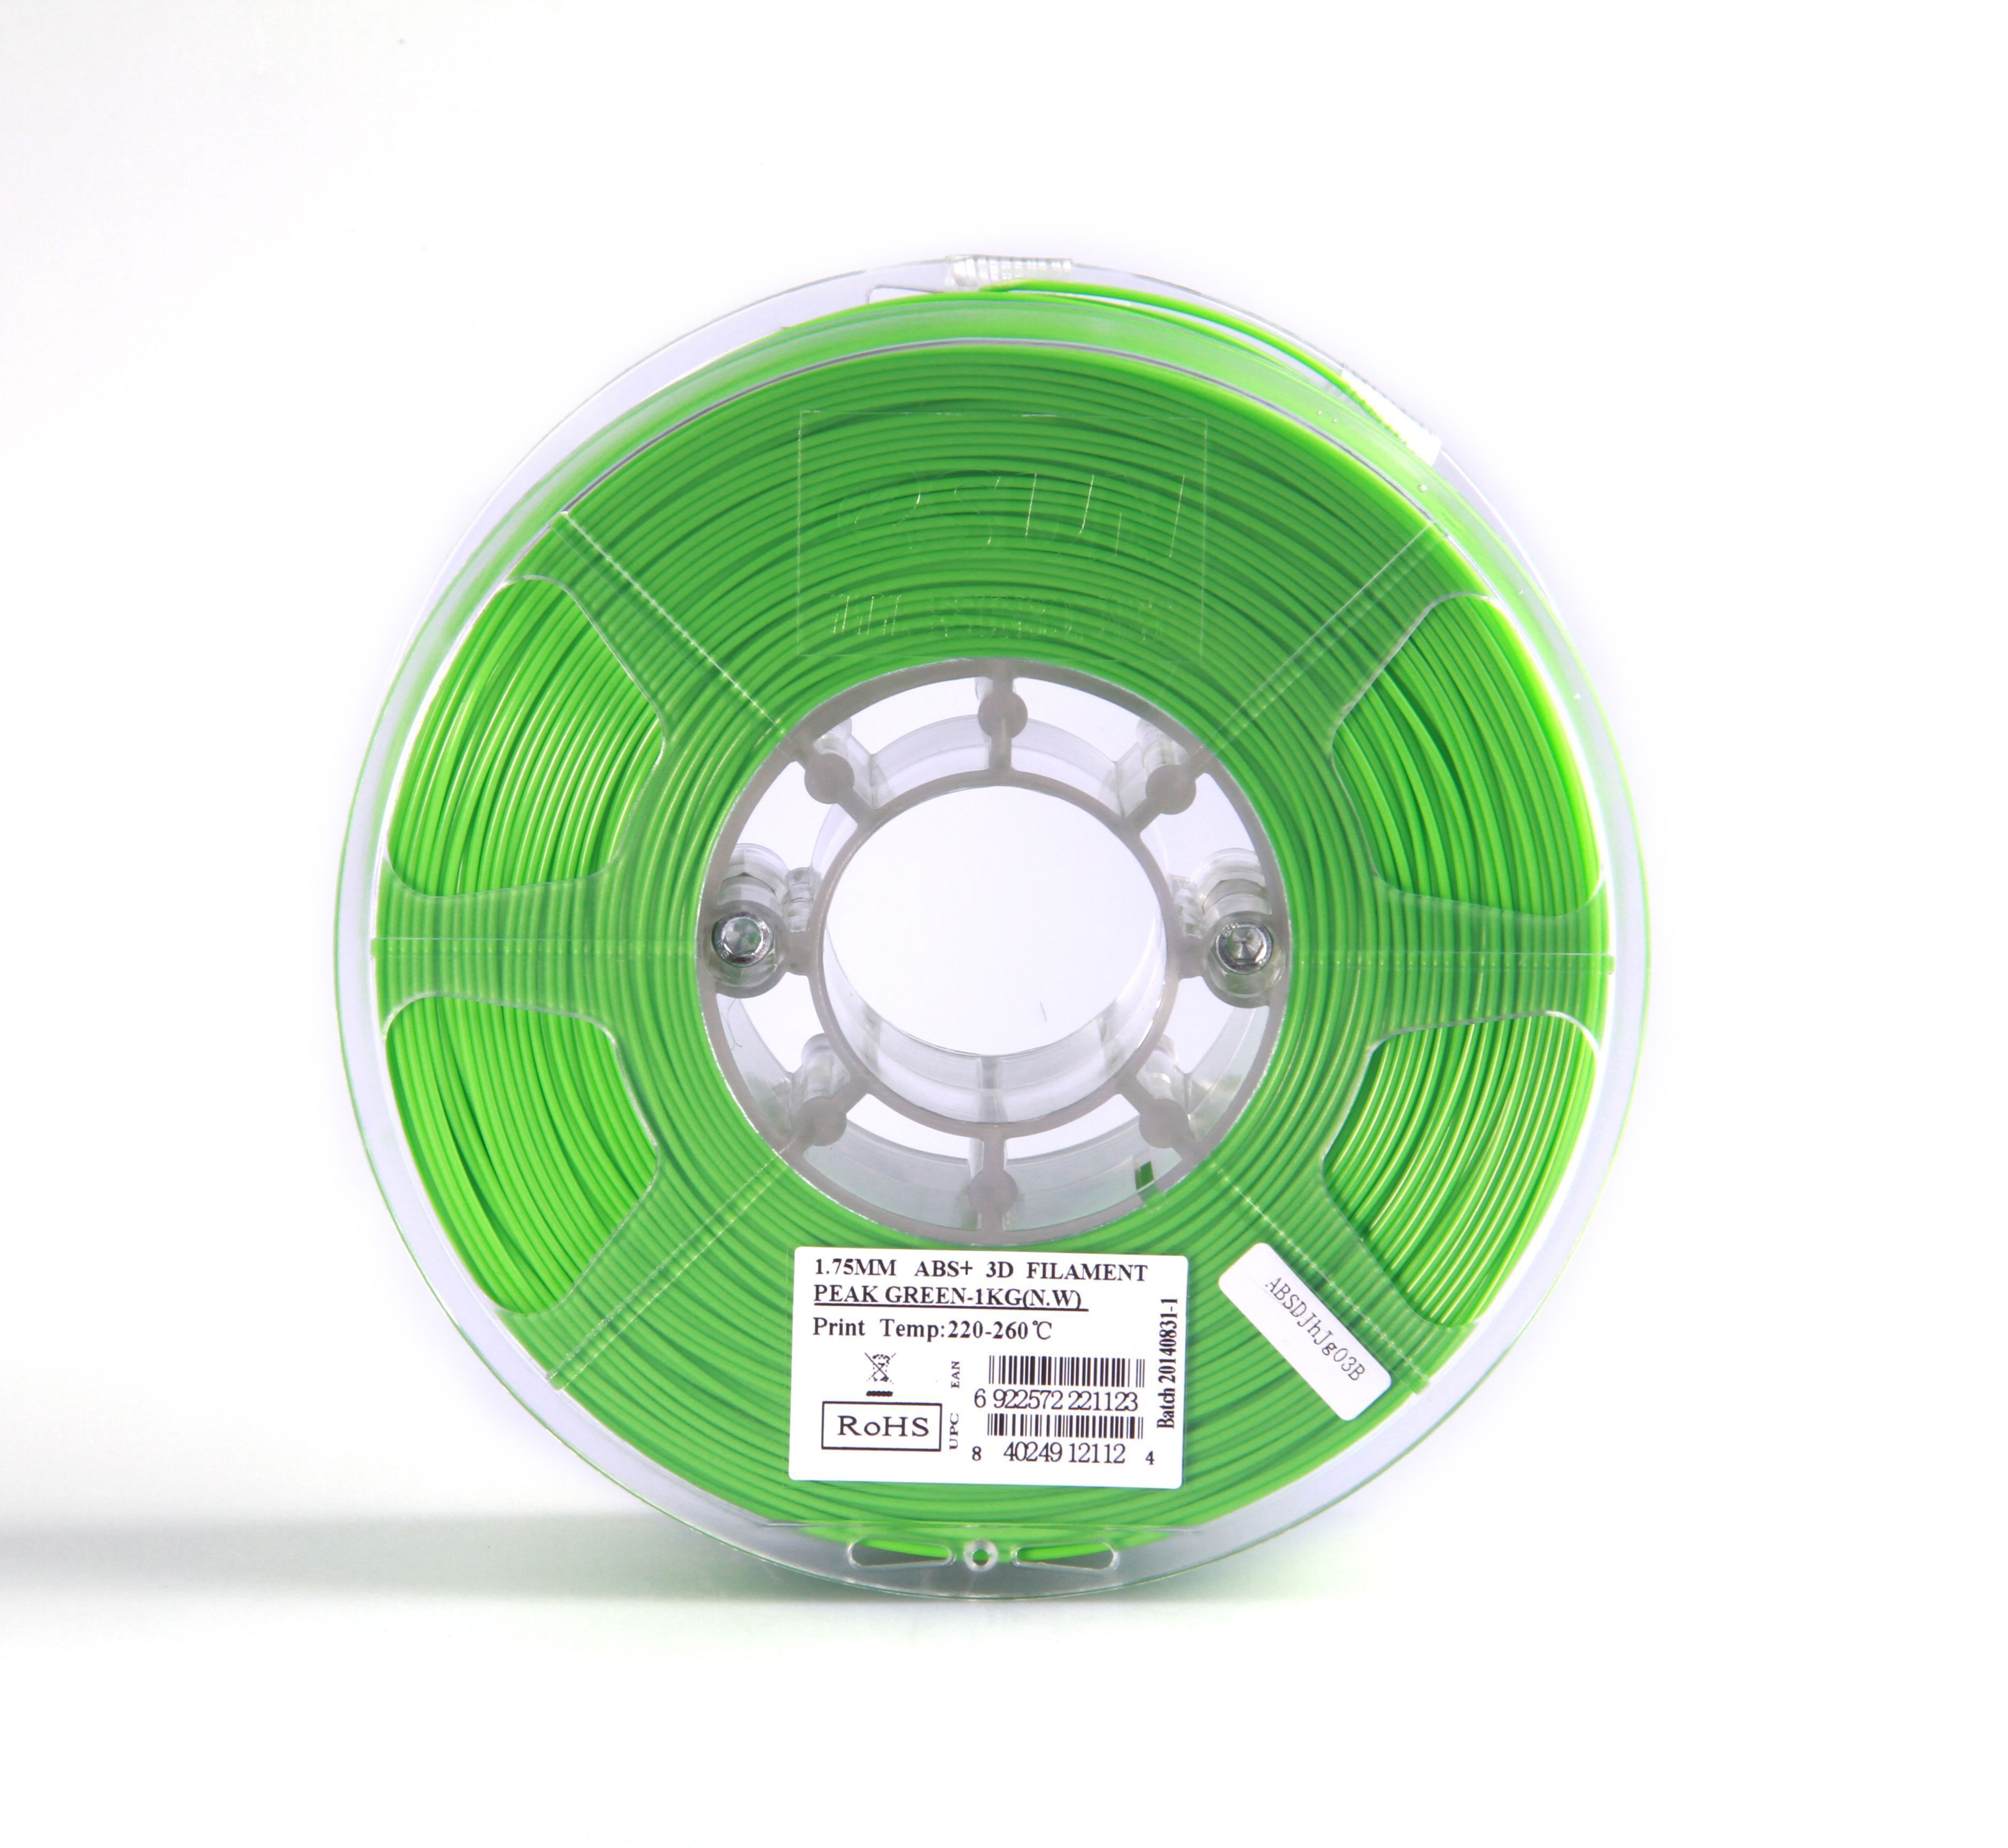 Катушка ABS+ пластика Esun, 1.75 мм, 1 кг, светло-зелёная